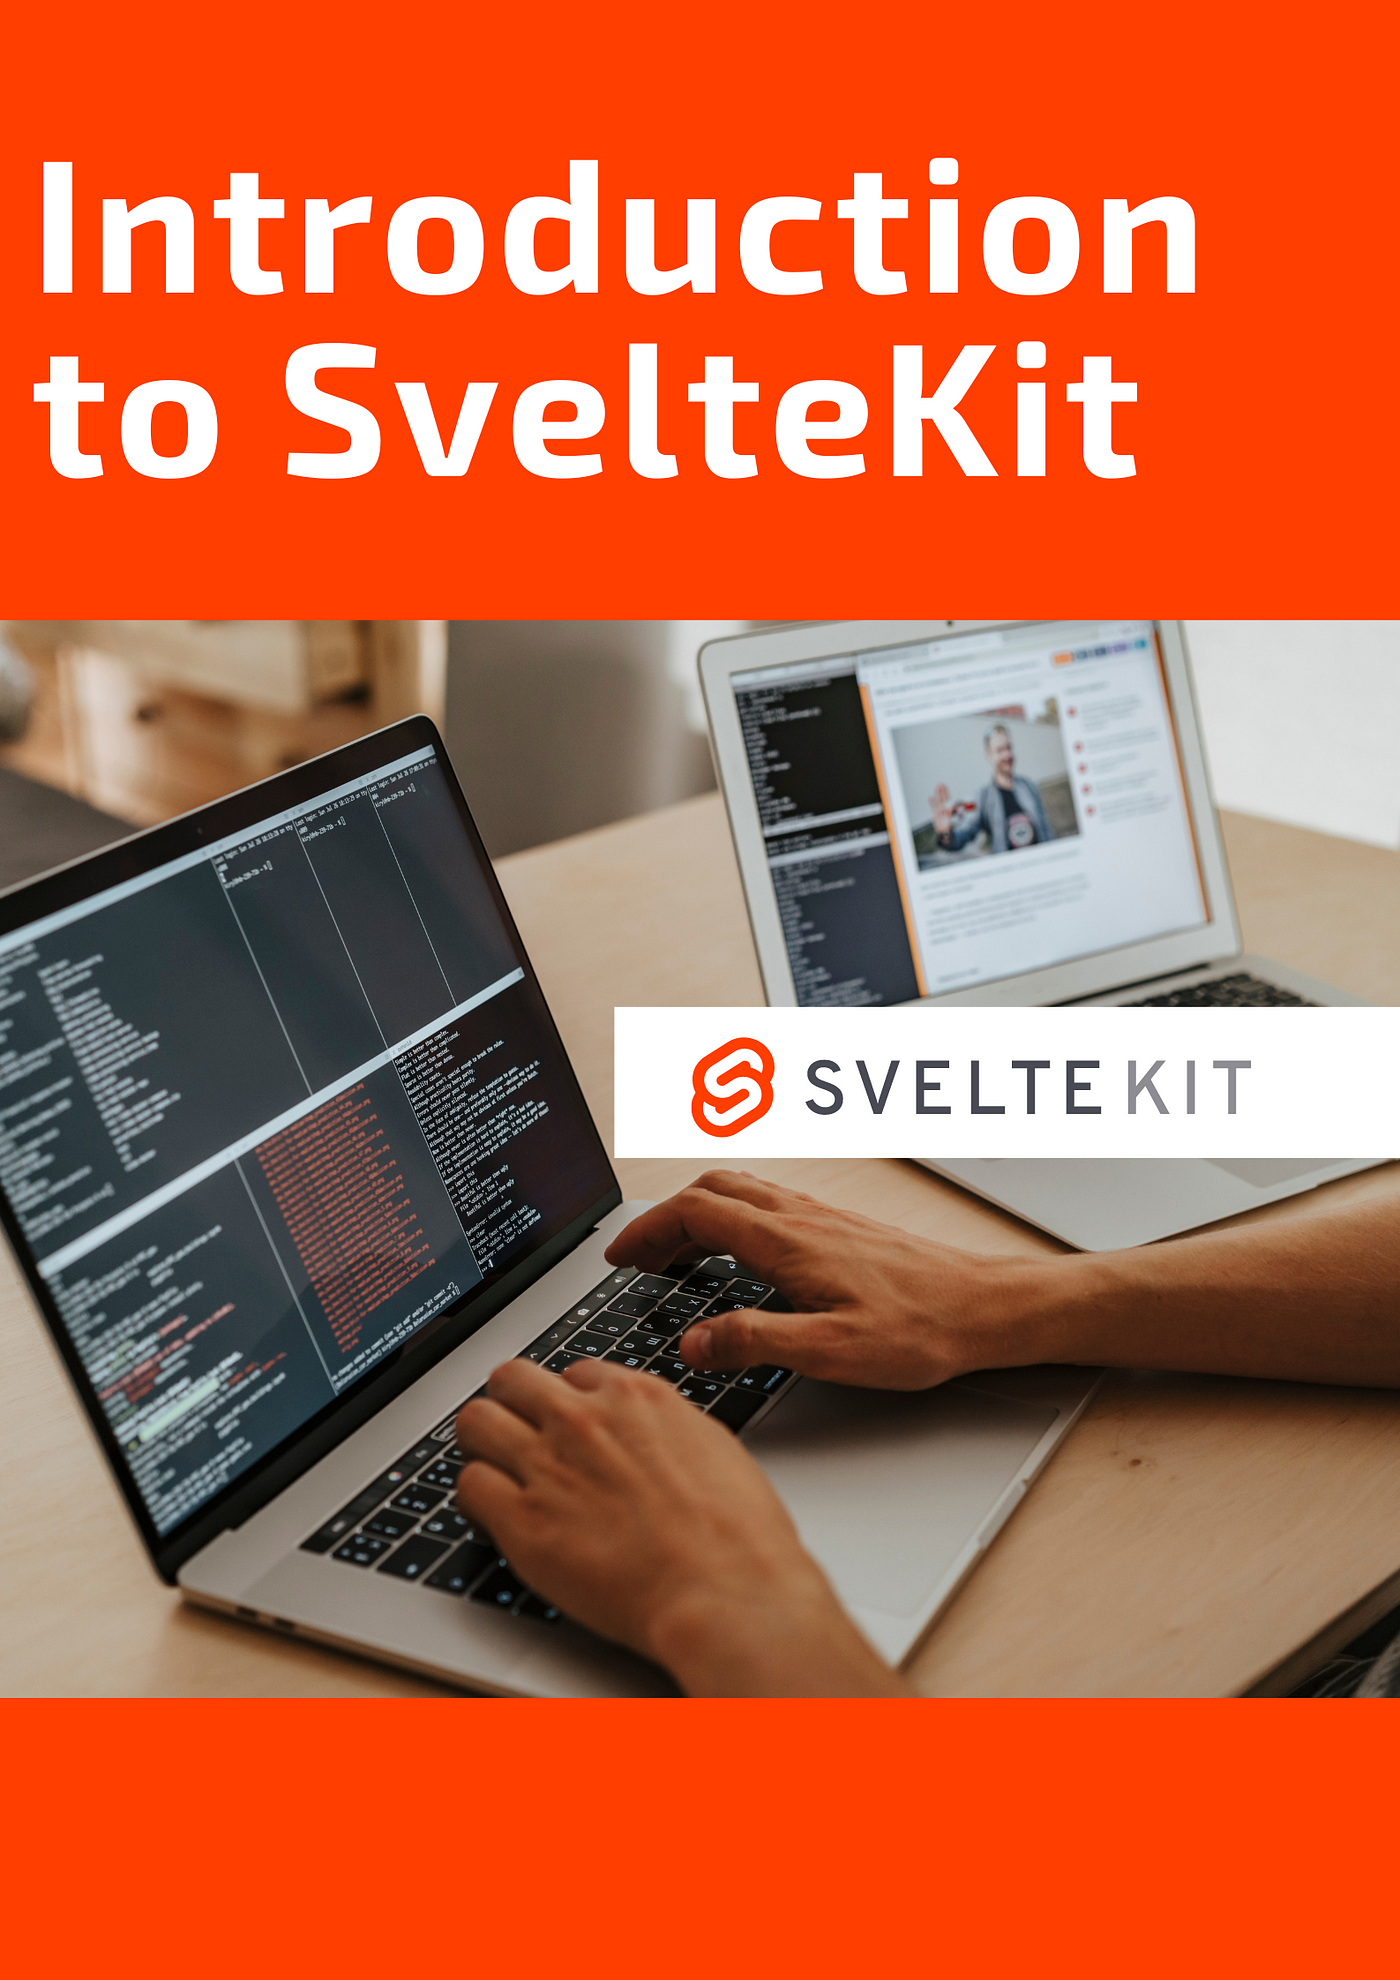 SvelteKit Tutorial: Build a Website From Scratch